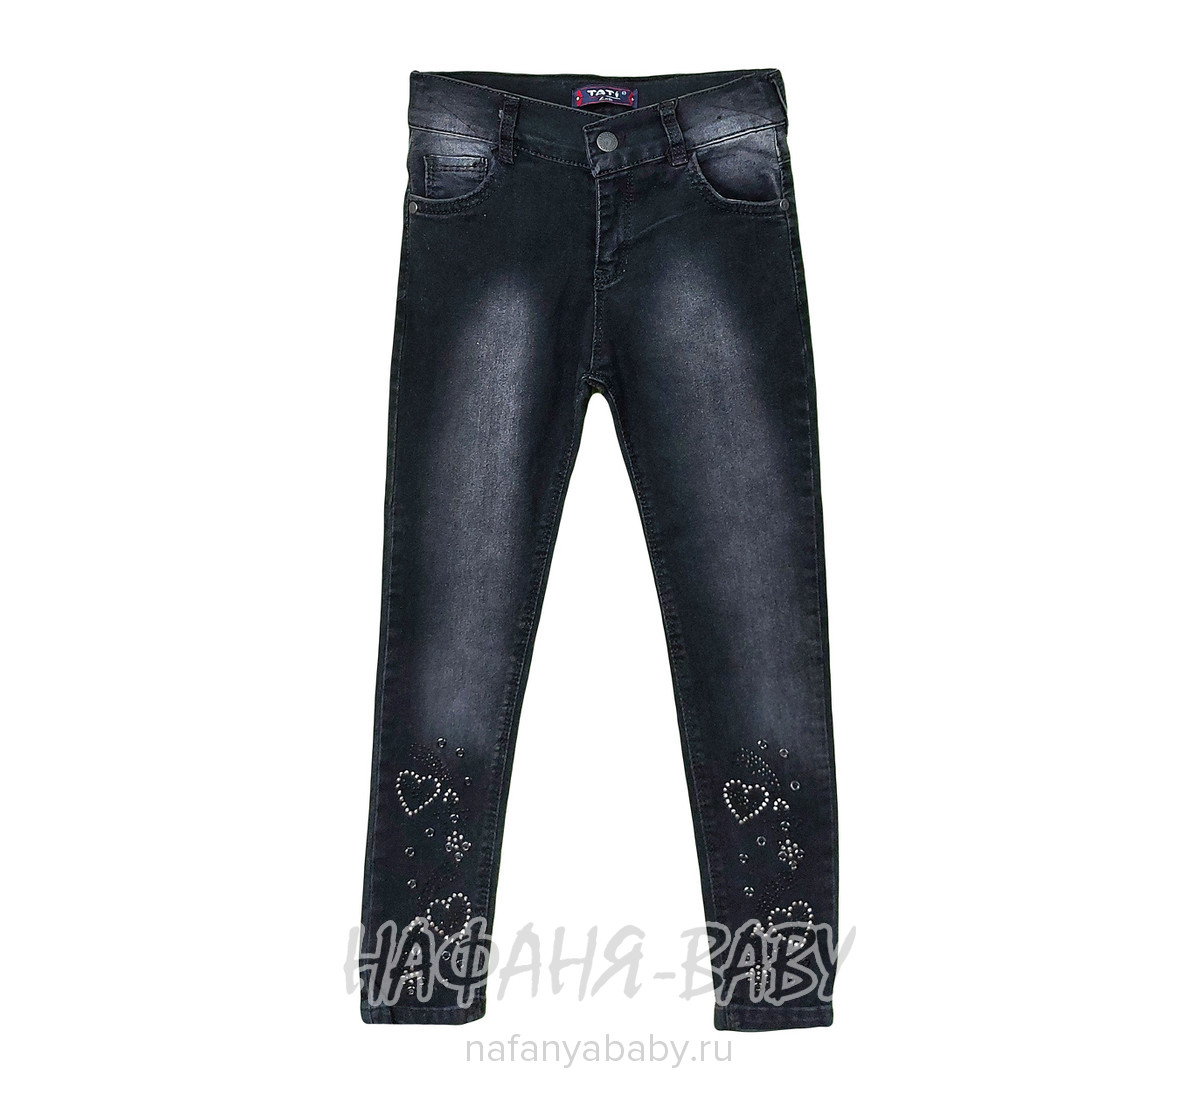 Подростковые джинсы TATI Jeans арт: 8162, 10-15 лет, 5-9 лет, оптом Турция